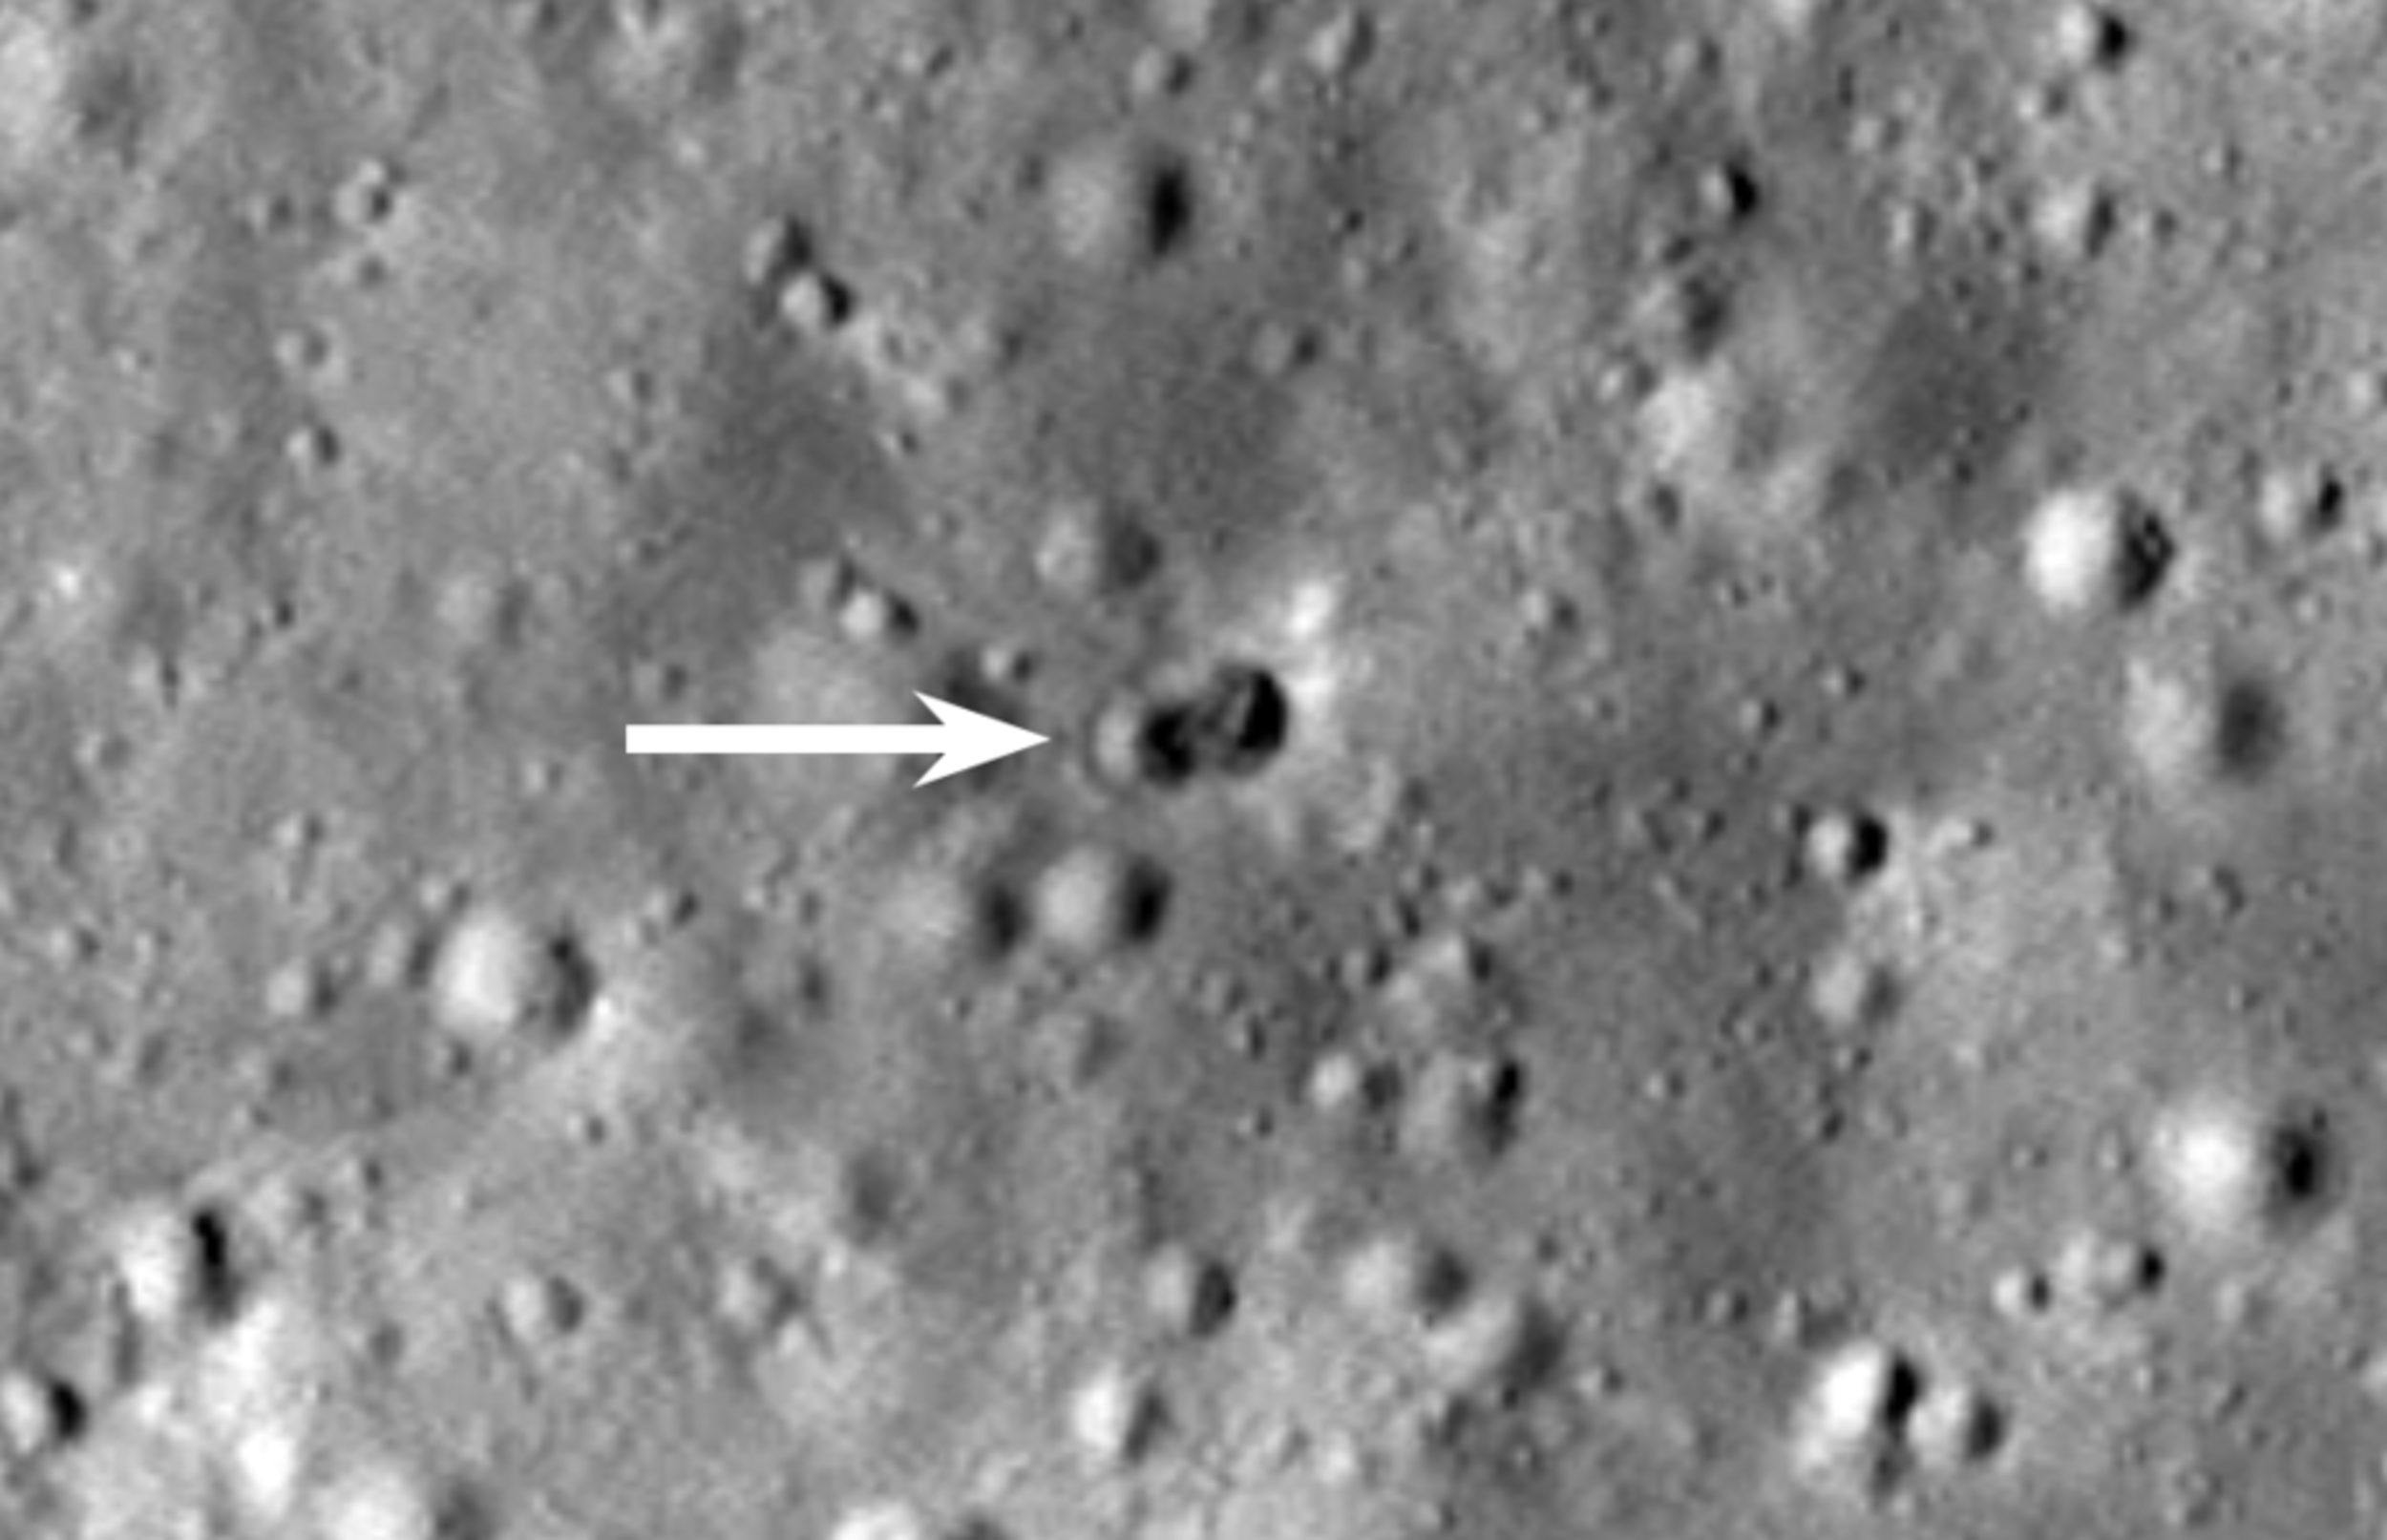 NASA descubre un impresionante cráter en la Luna donde impactó un cohete fuera de control